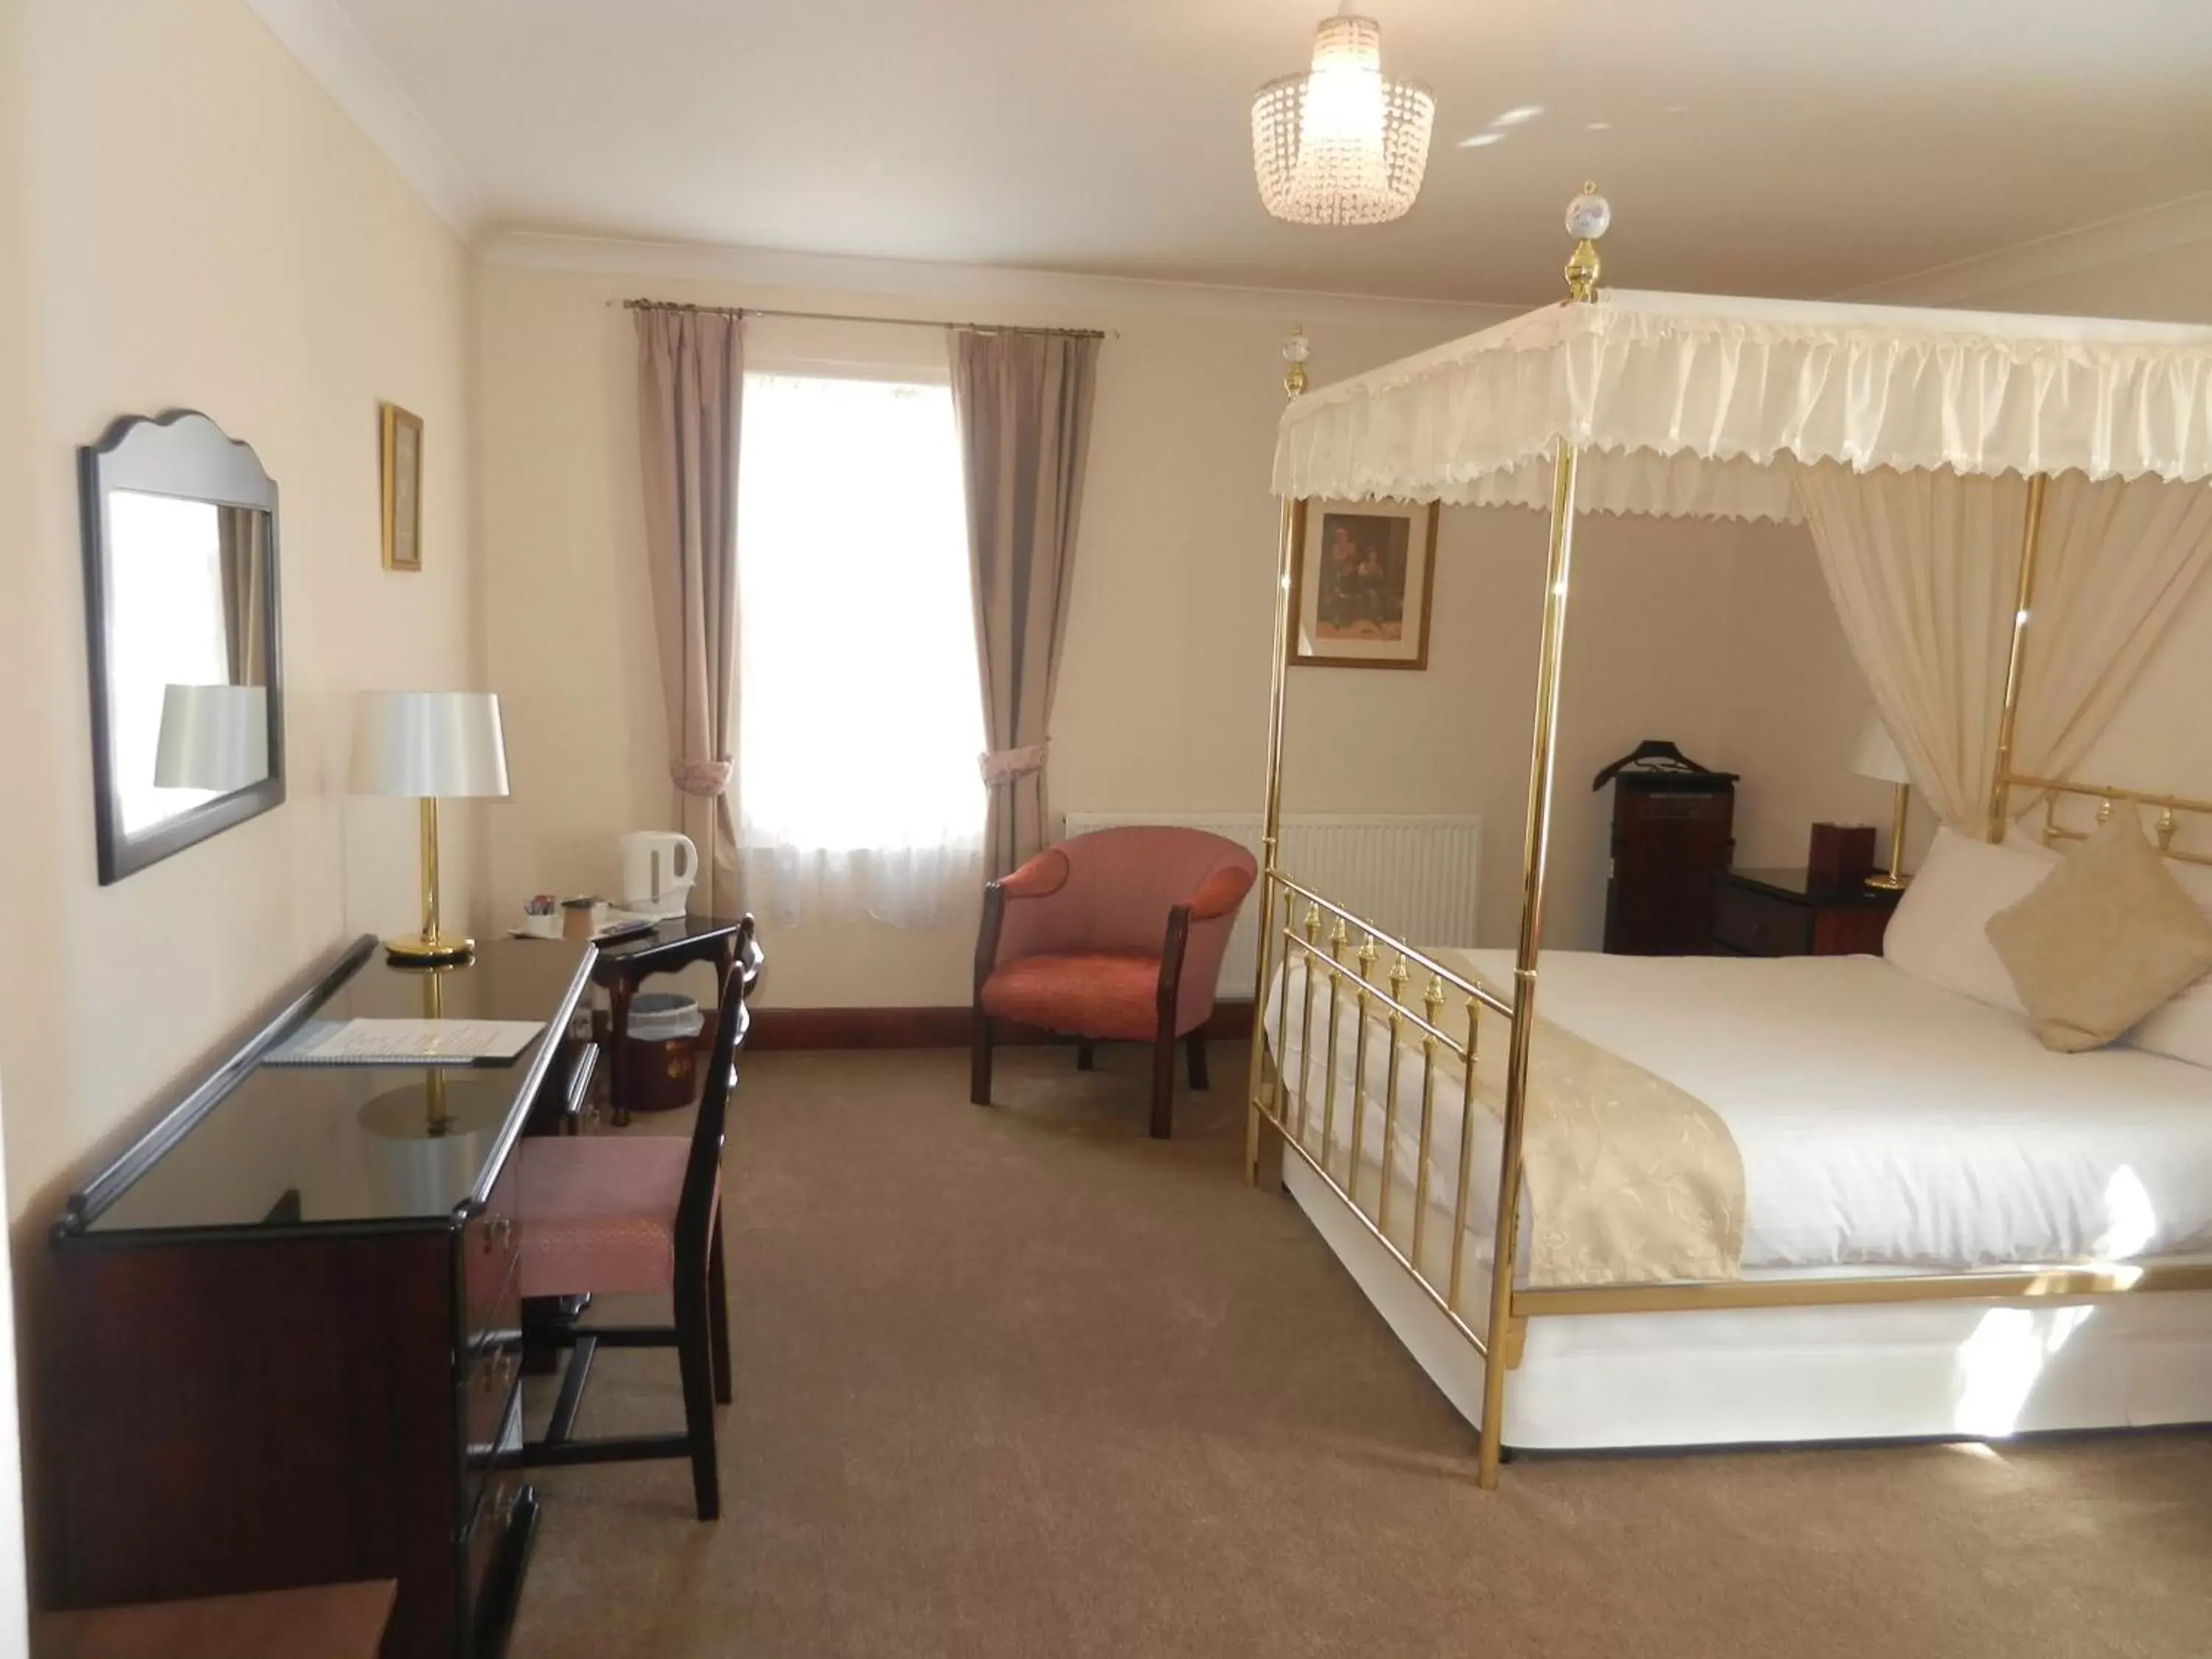 Bed in Morangie Hotel Tain